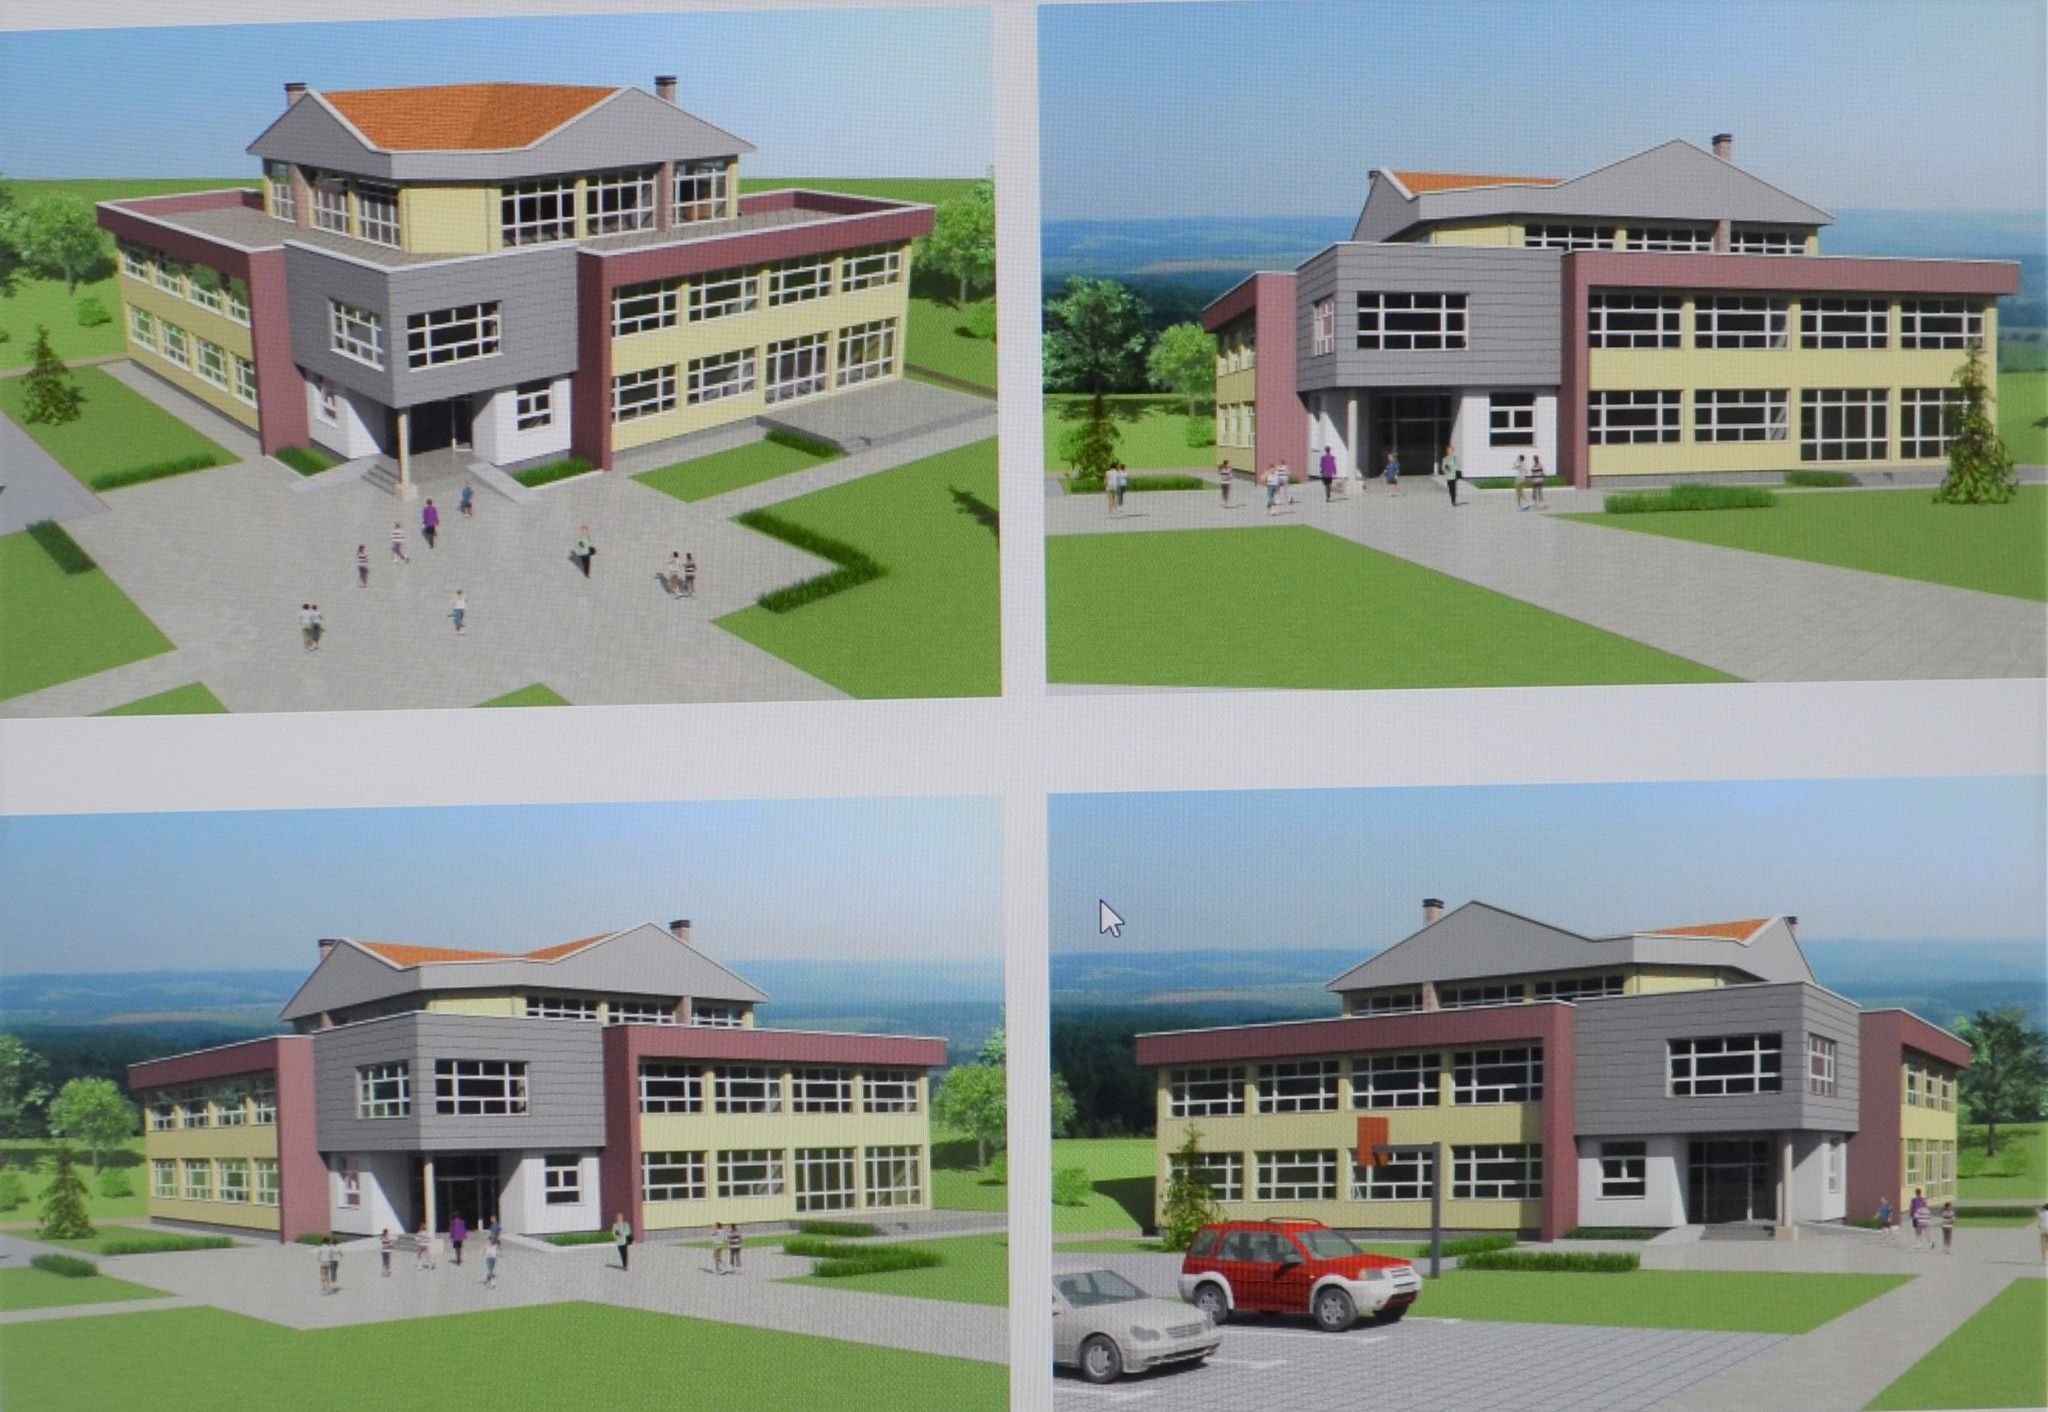 Vihet gurthemeli i shkollës fillore në Gushavc të Mitrovicës   